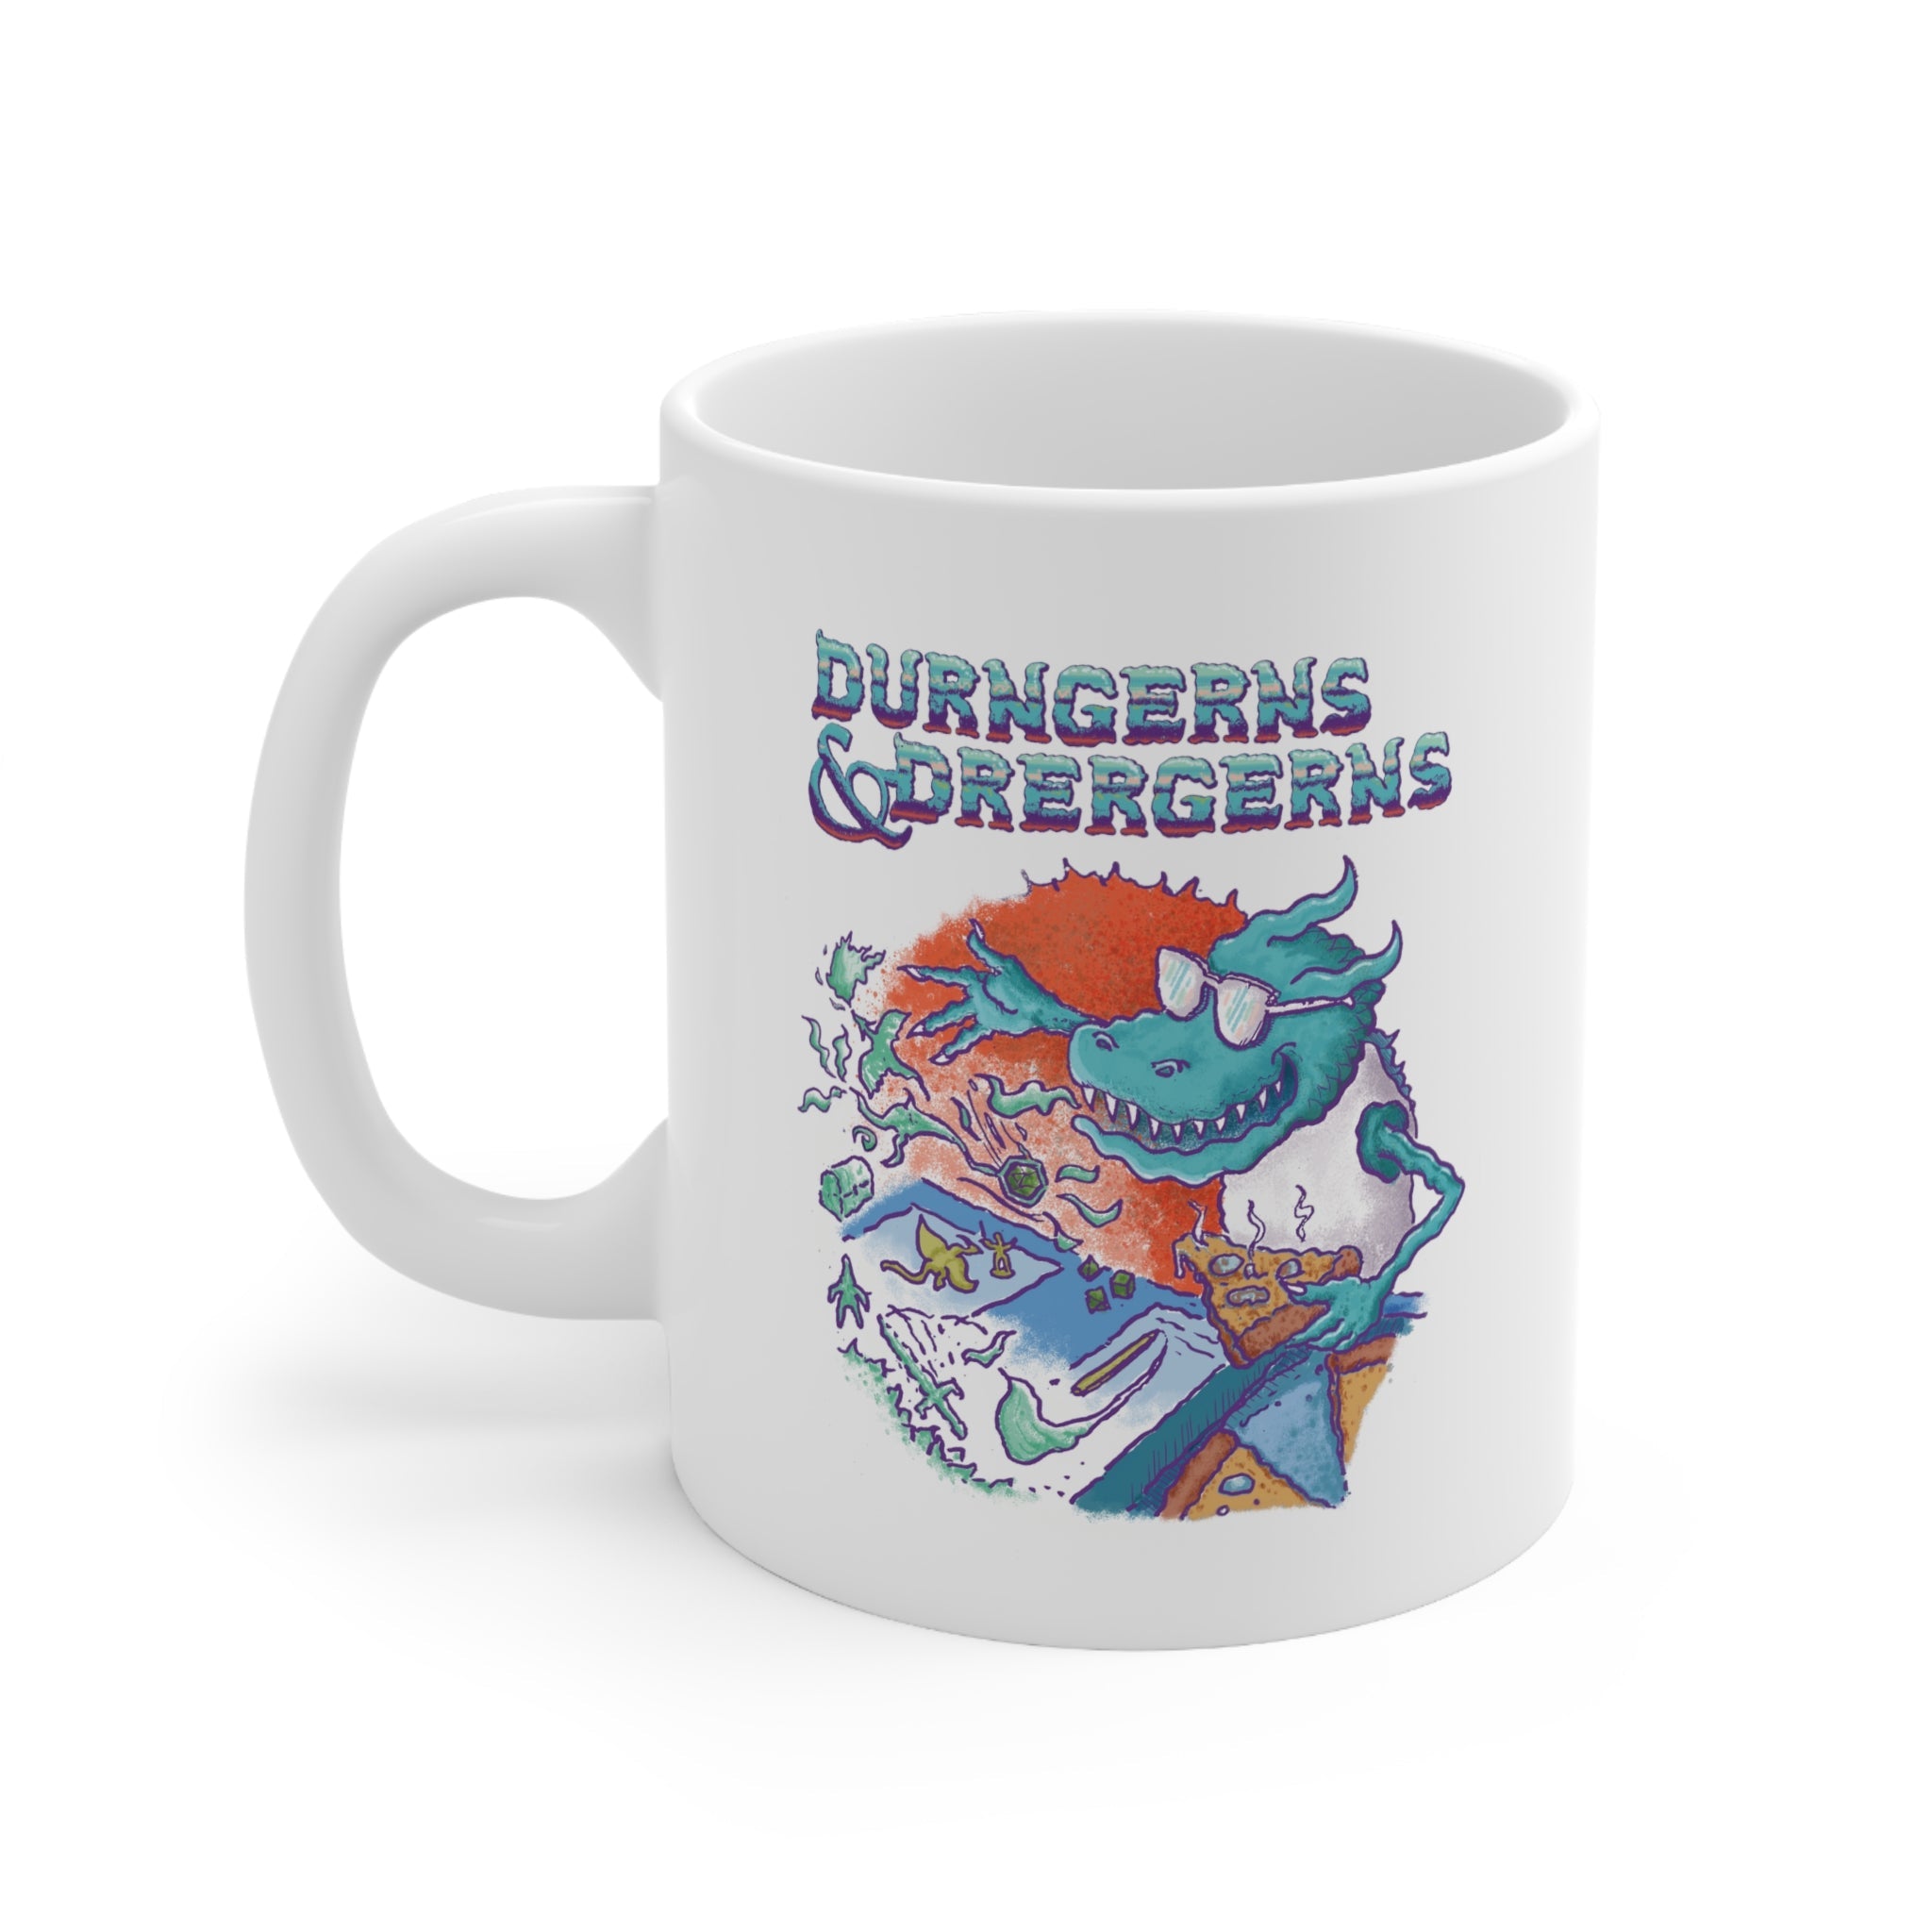 Durngerns & Drergerns | Ceramic Mug 11oz - Mug - Ace of Gnomes - 13513873165678331491